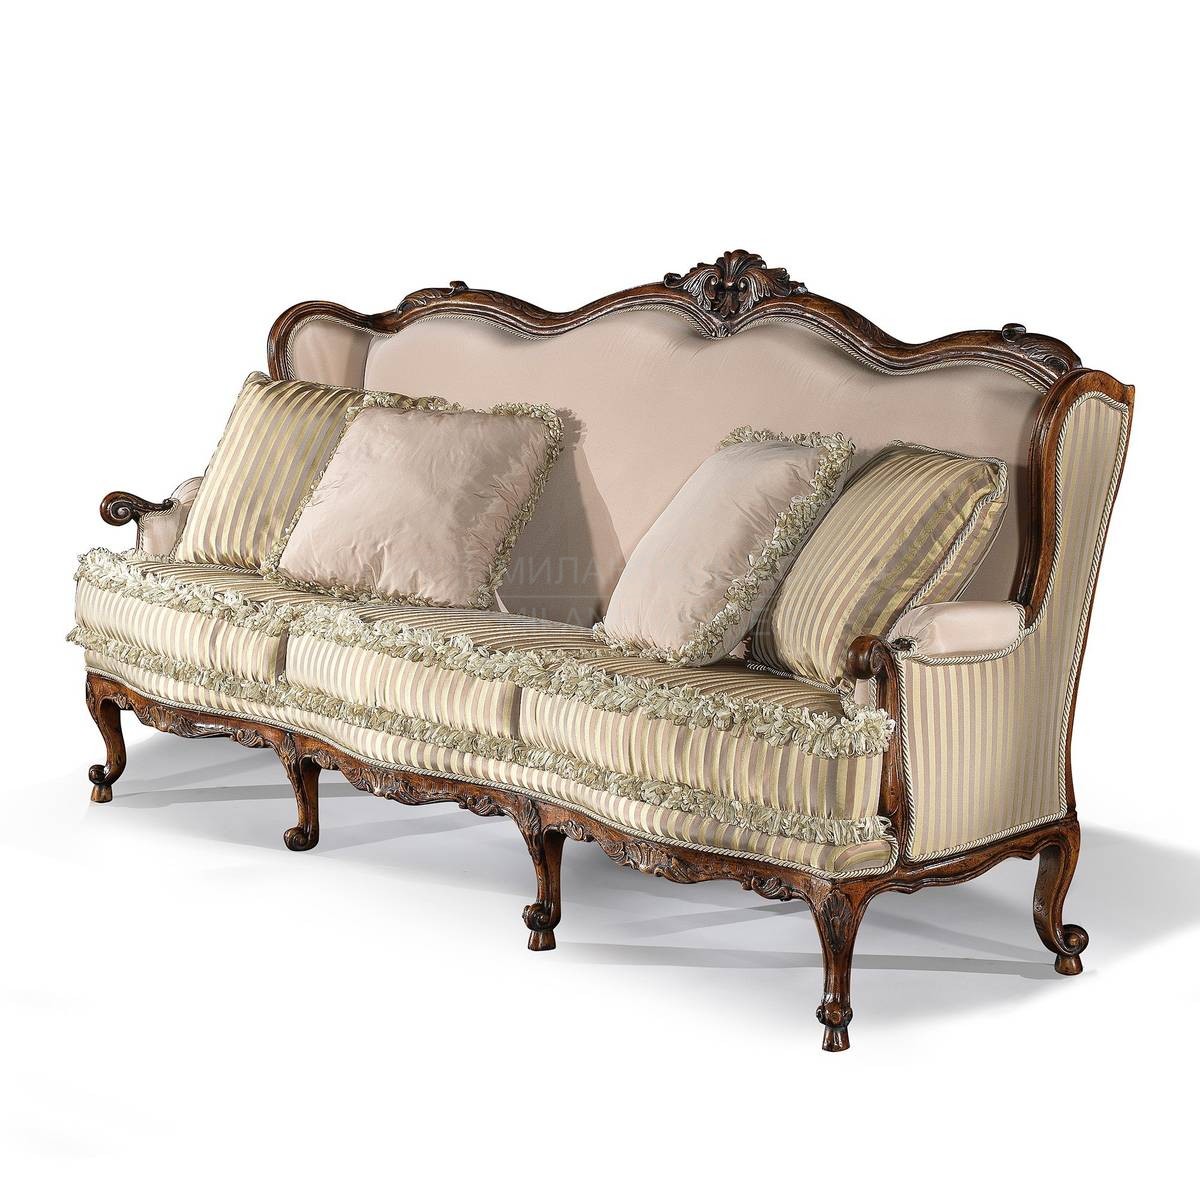 Прямой диван The Upholstery/D300 из Италии фабрики FRANCESCO MOLON